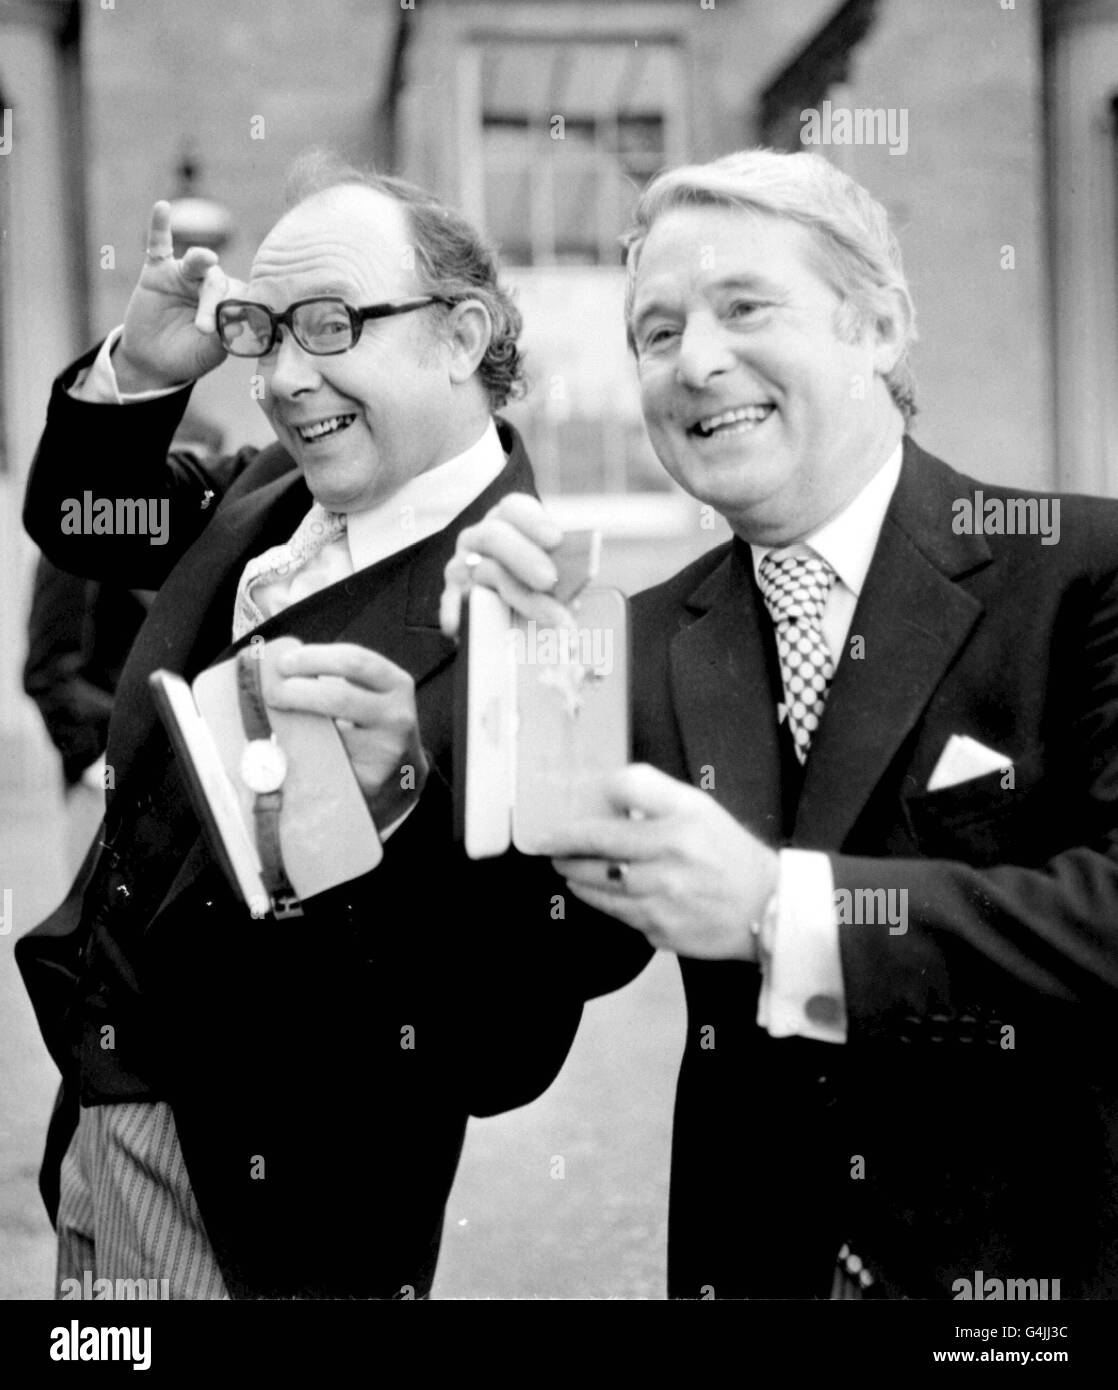 Der legendäre Comedy-Doppelakt Eric Morecambe (links) und Ernie Wise empfangen ihre OBE von der Queen im Buckingham Palace. 21/3/99 Comedian Ernie Wise starb heute Morgen im Krankenhaus, sagte seine Frau Doreen. Er war 73 Jahre alt. Stockfoto